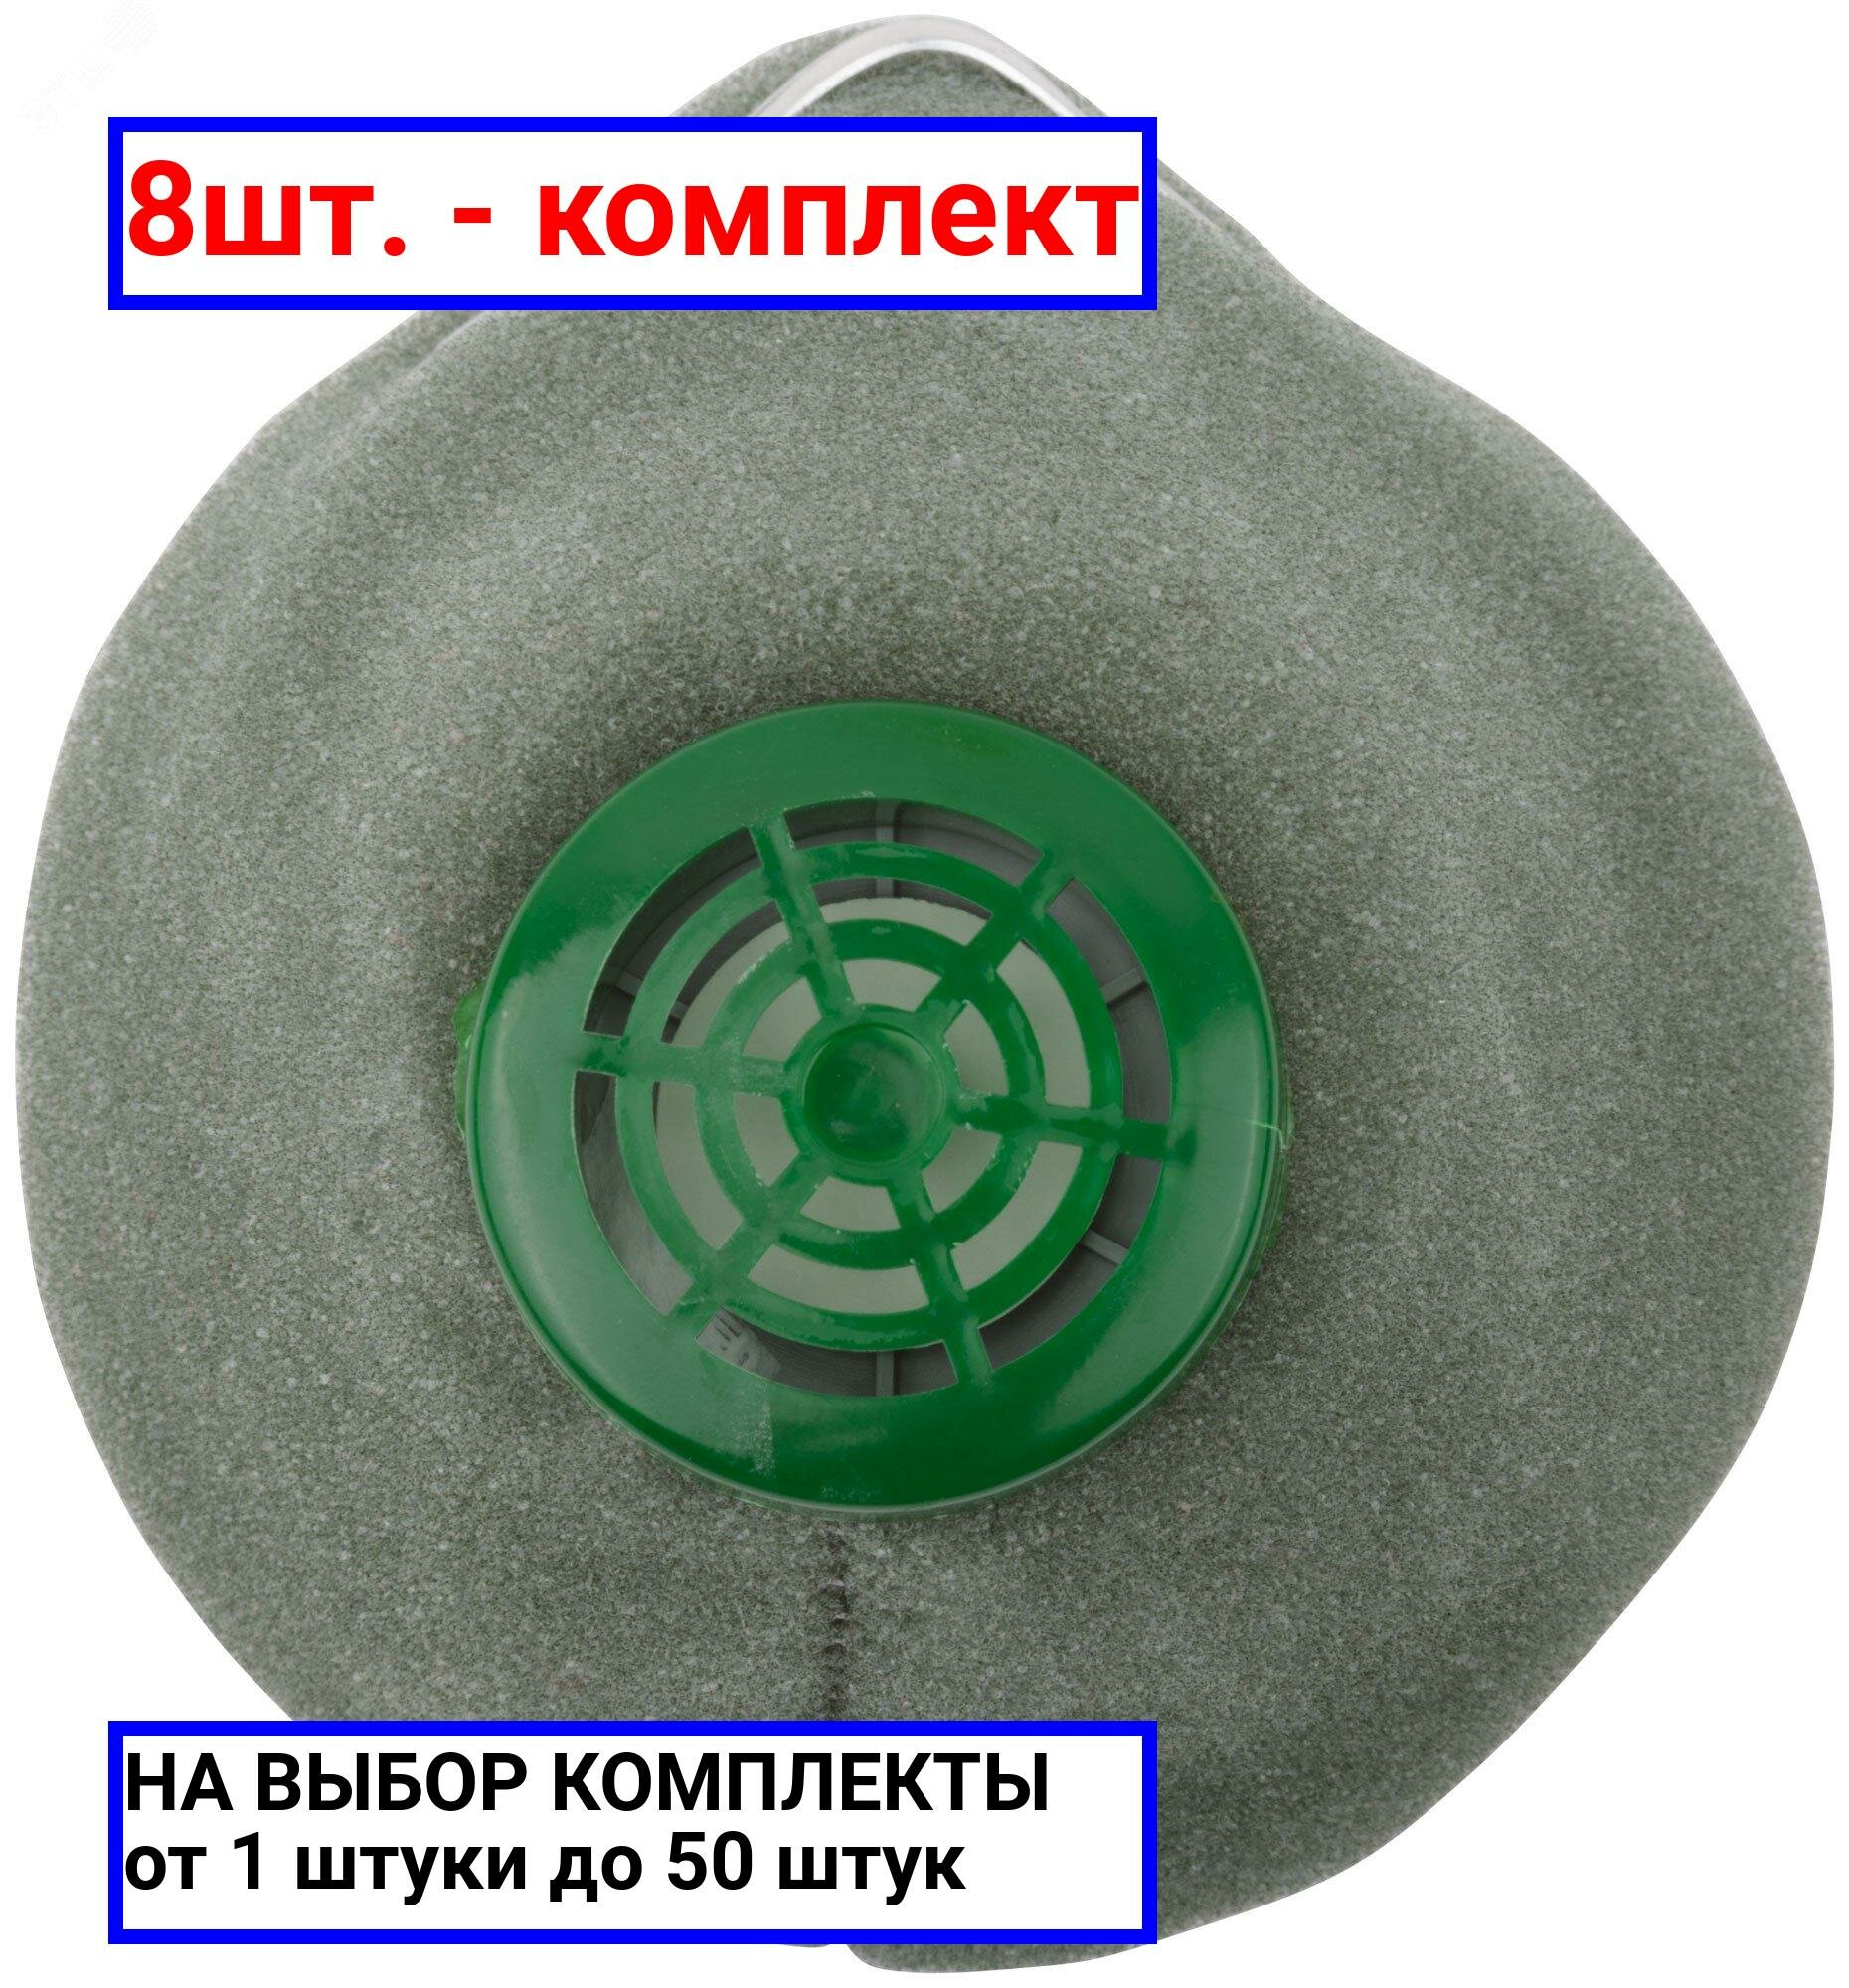 8шт. - Респиратор пылезащитный У-2К / РОС; арт. 12385; оригинал / - комплект 8шт